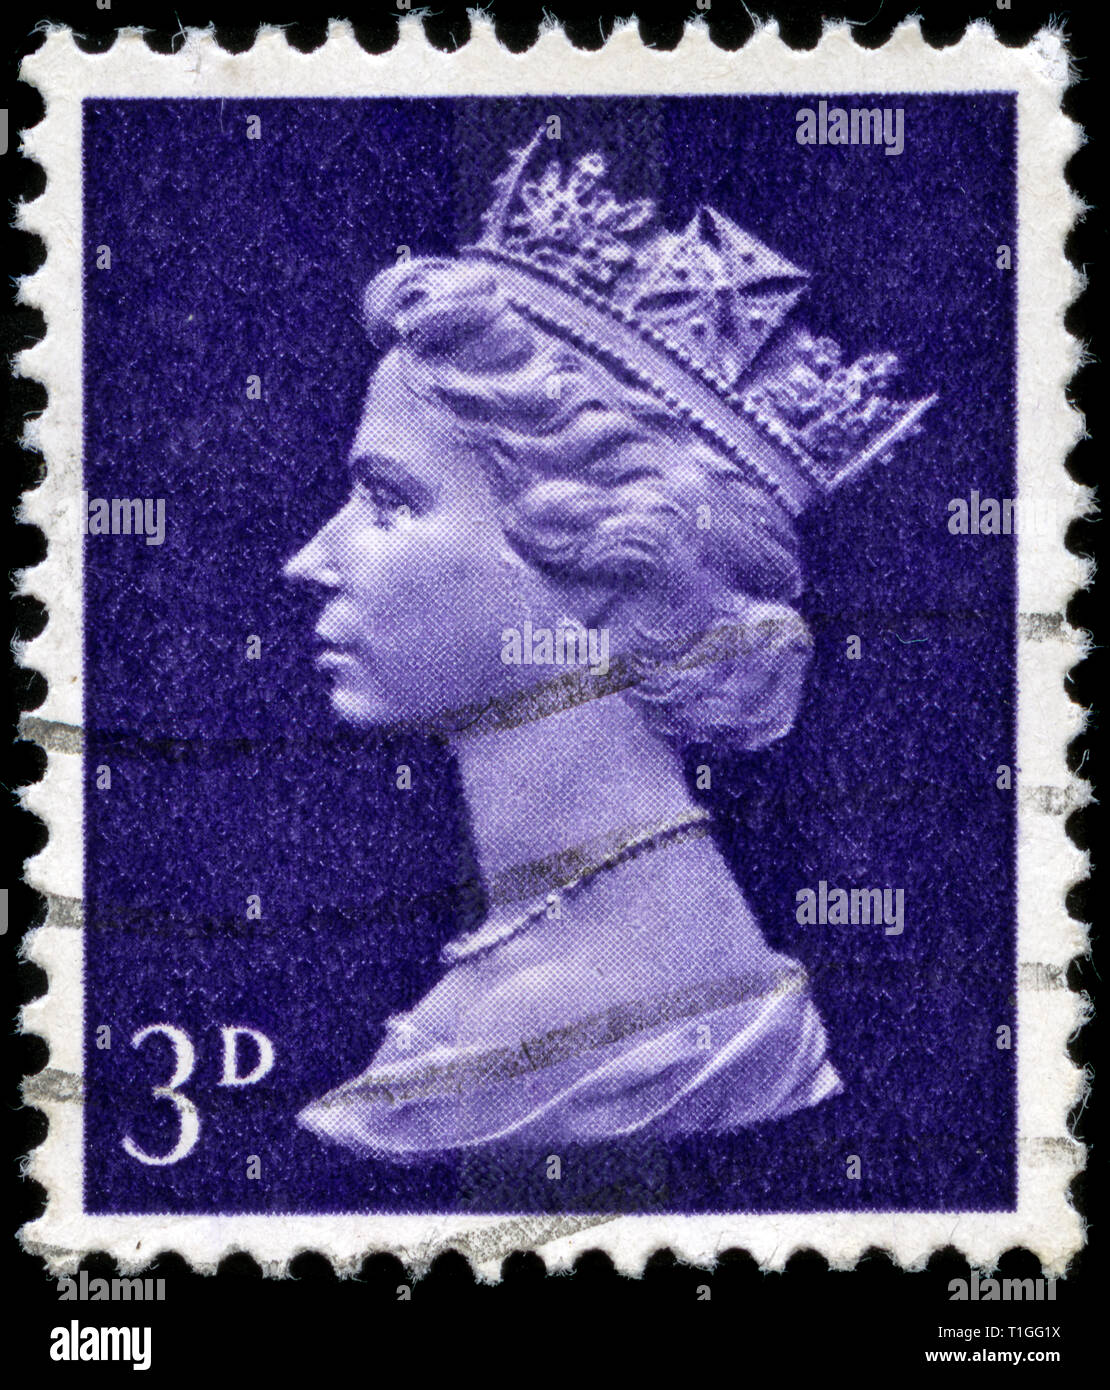 Francobollo da Regno Unito e Irlanda del Nord nel Queen Elizabeth II - Predecimal Machin serie emesse nel 1967 Foto Stock